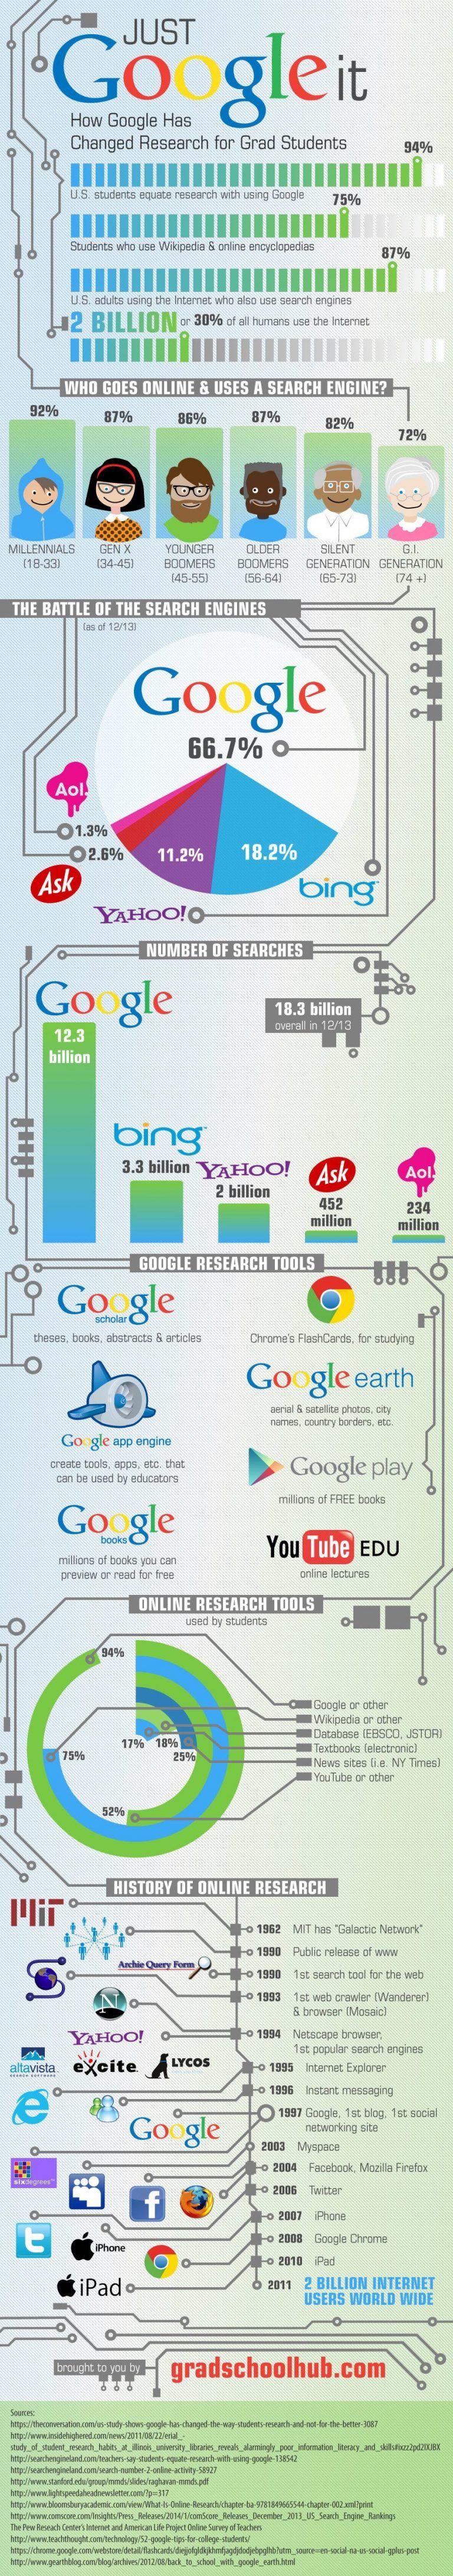 google infographic creator